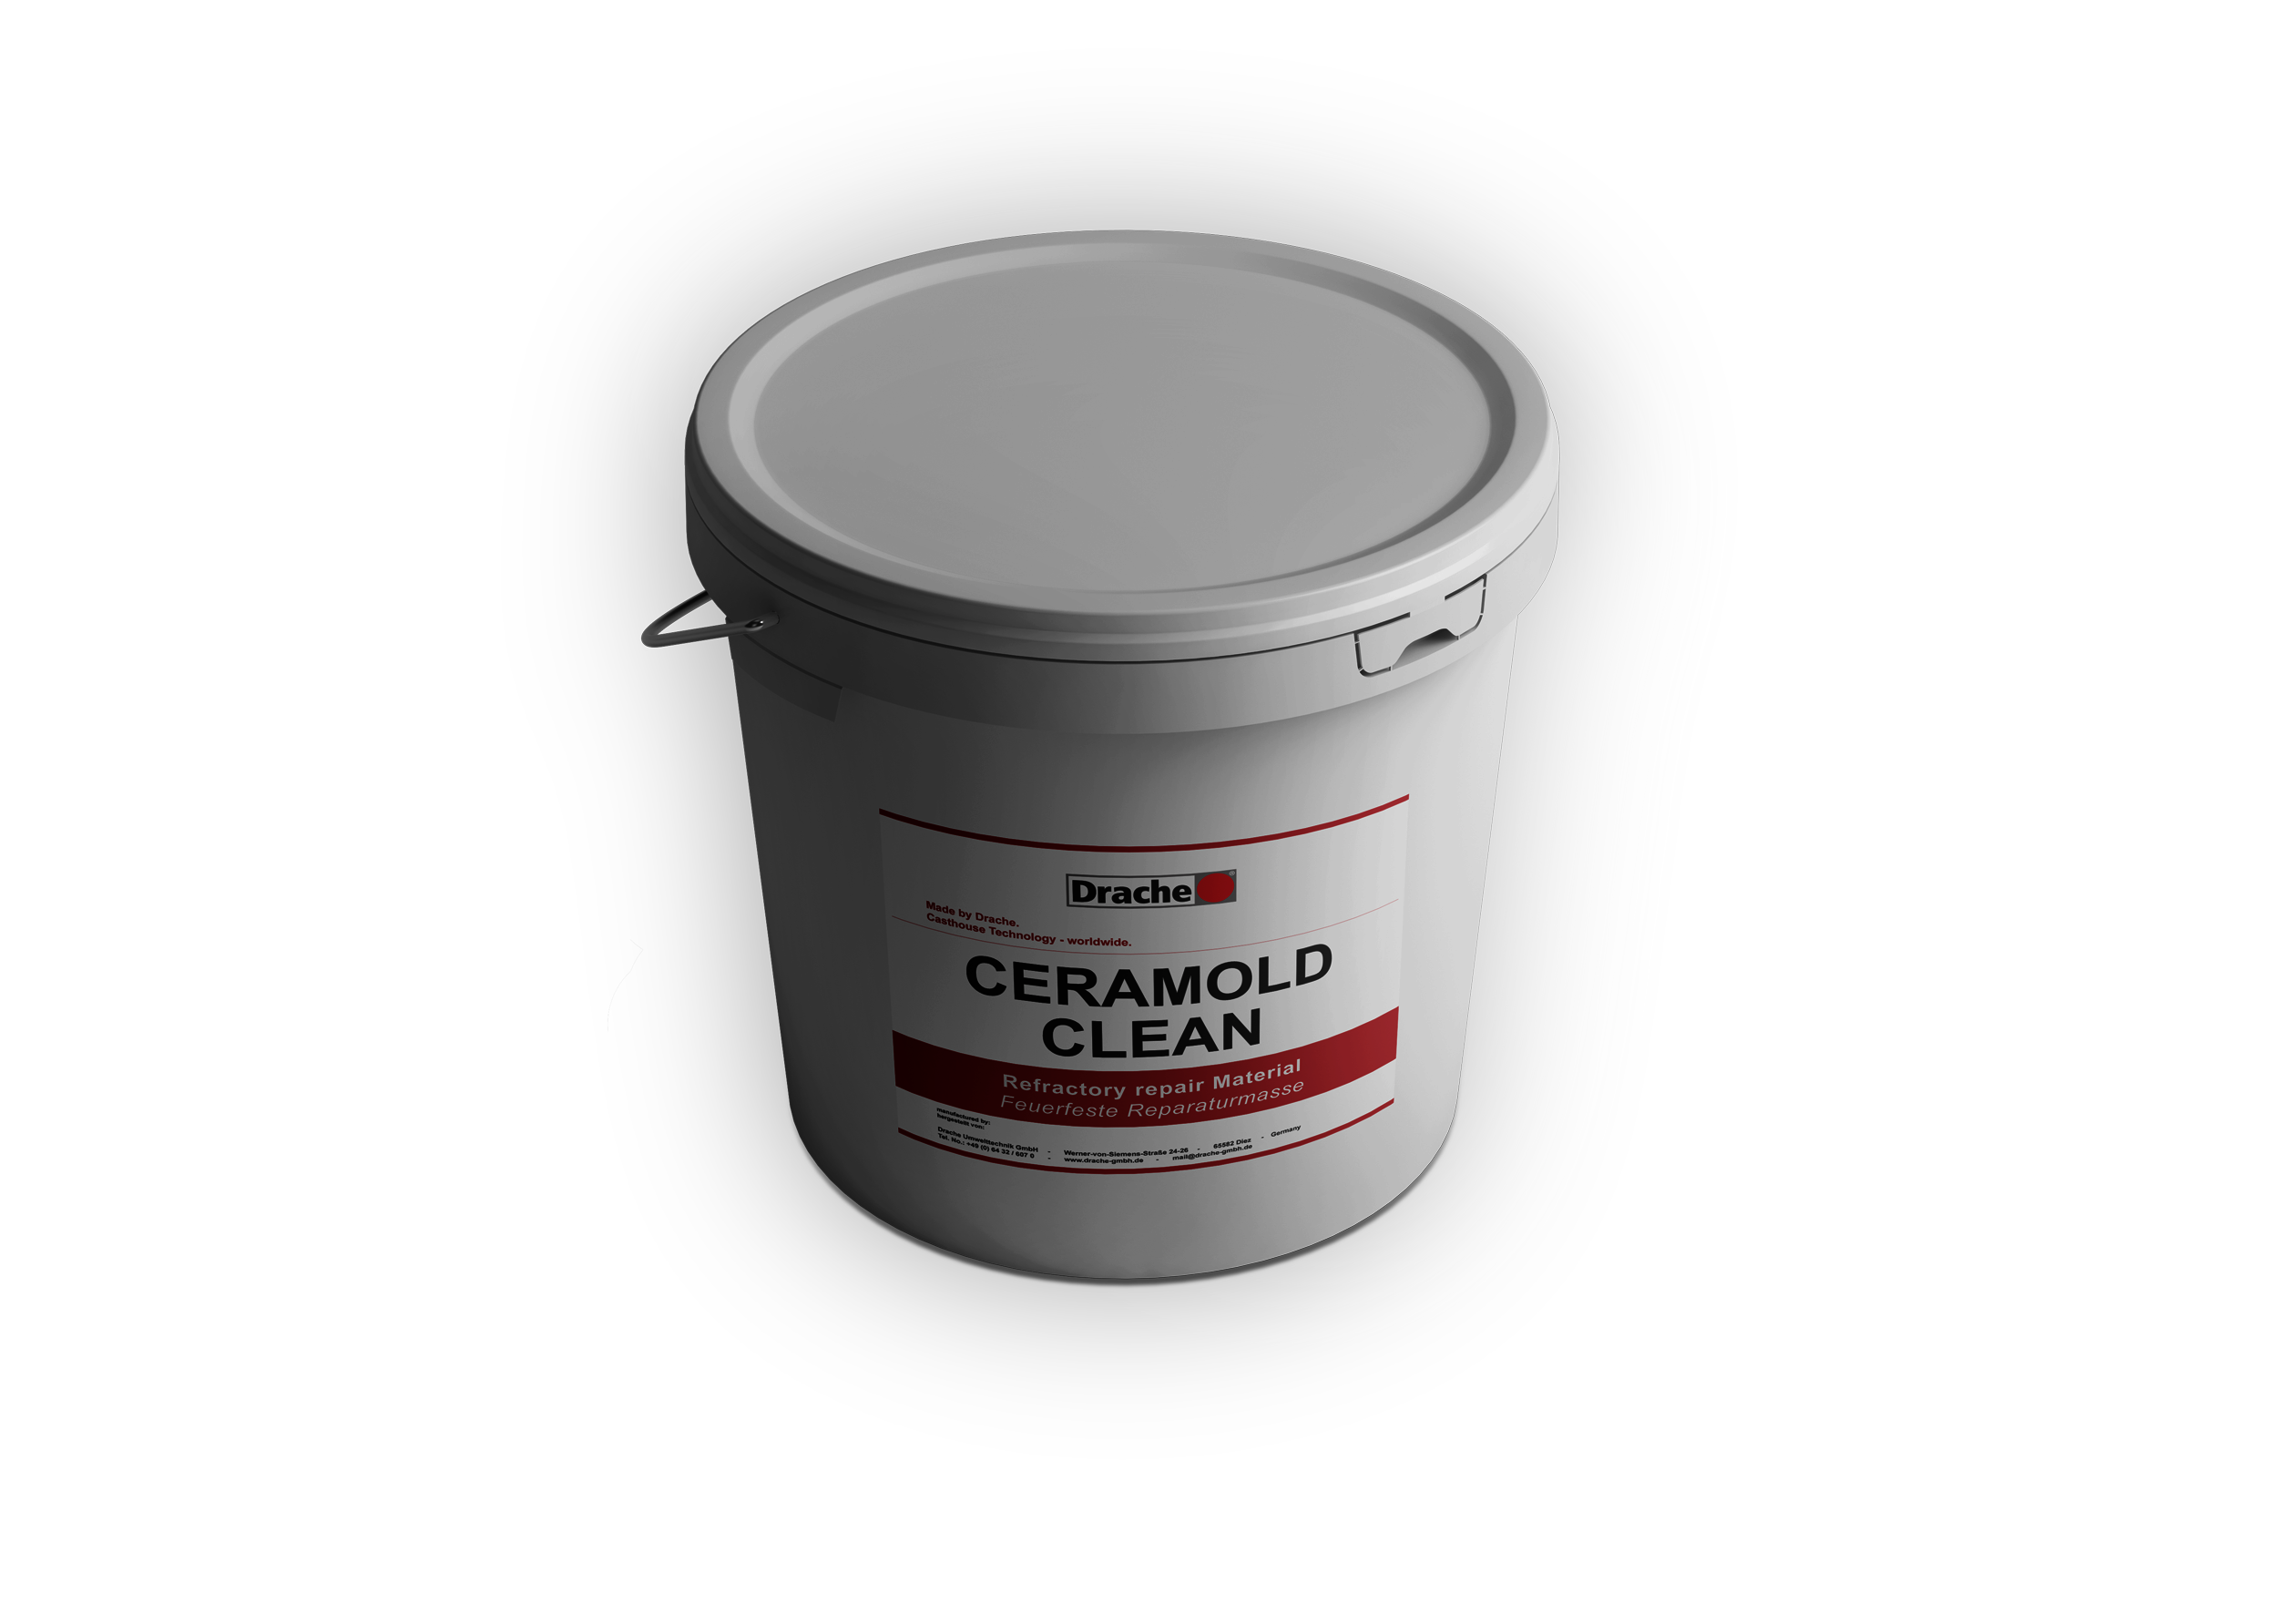 Ceramold Clean repair compound